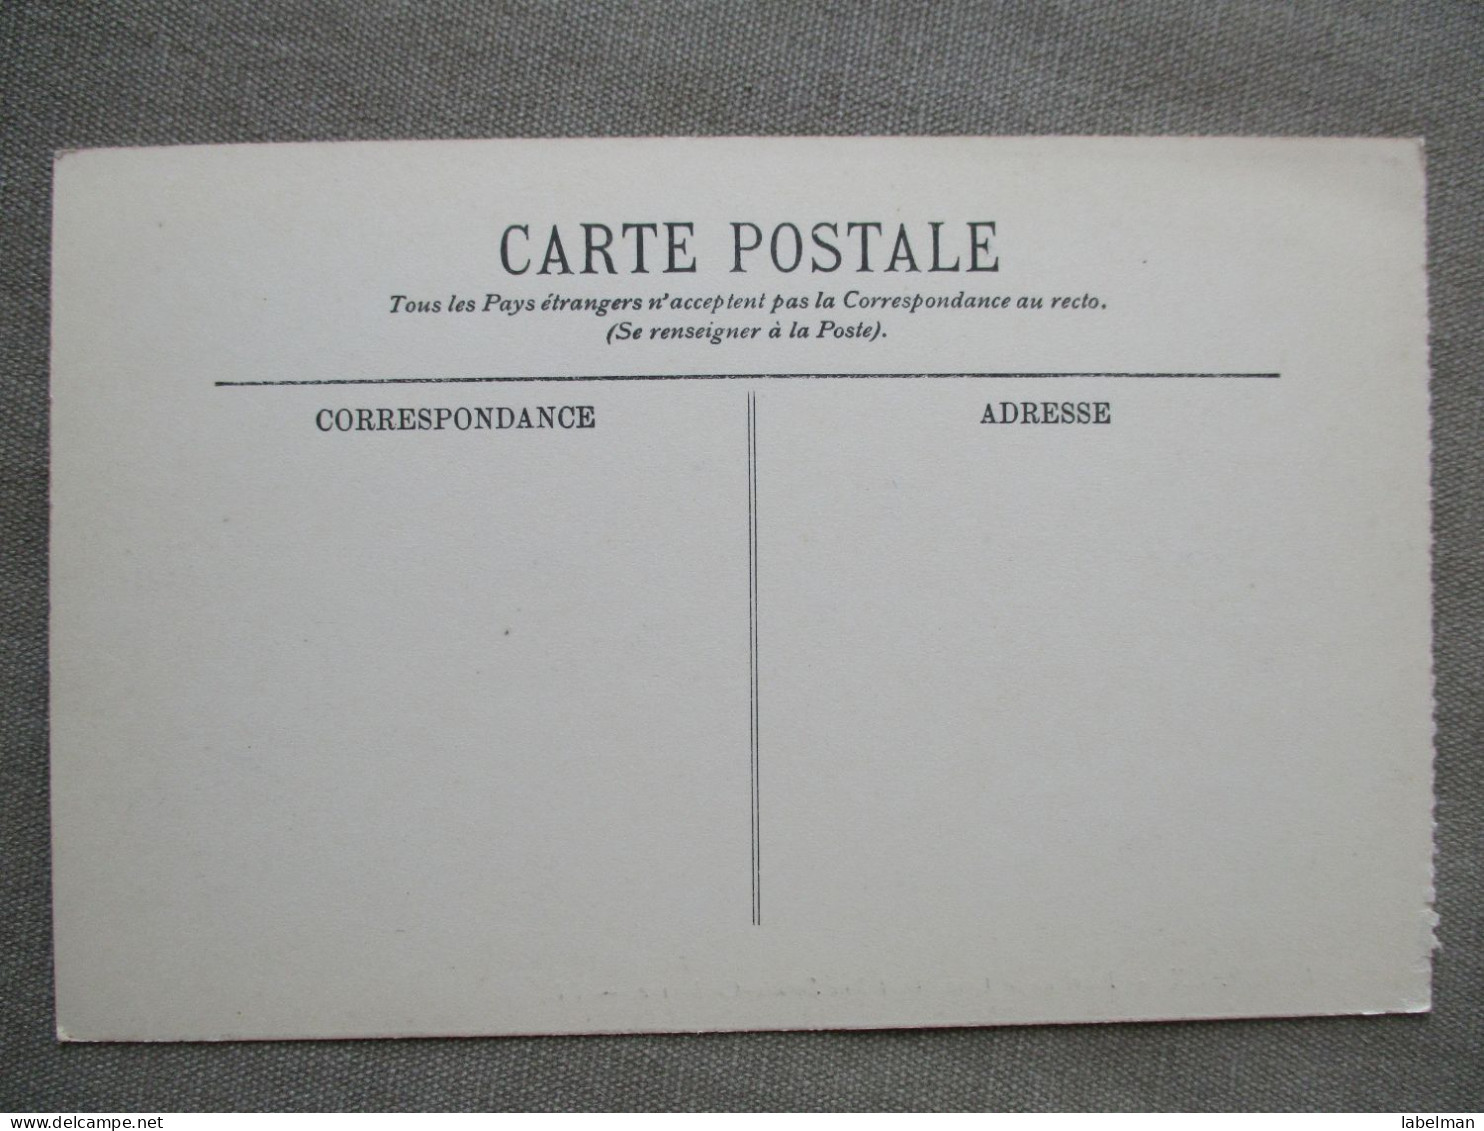 FRANCE BORDEAUX PLACE DE LA COMEDIE CARTE POSTALE ANSICHTSKARTE POSTCARD CARD KARTE CARTOLINA POSTKARTE BRIEF KAARTE - Brumath